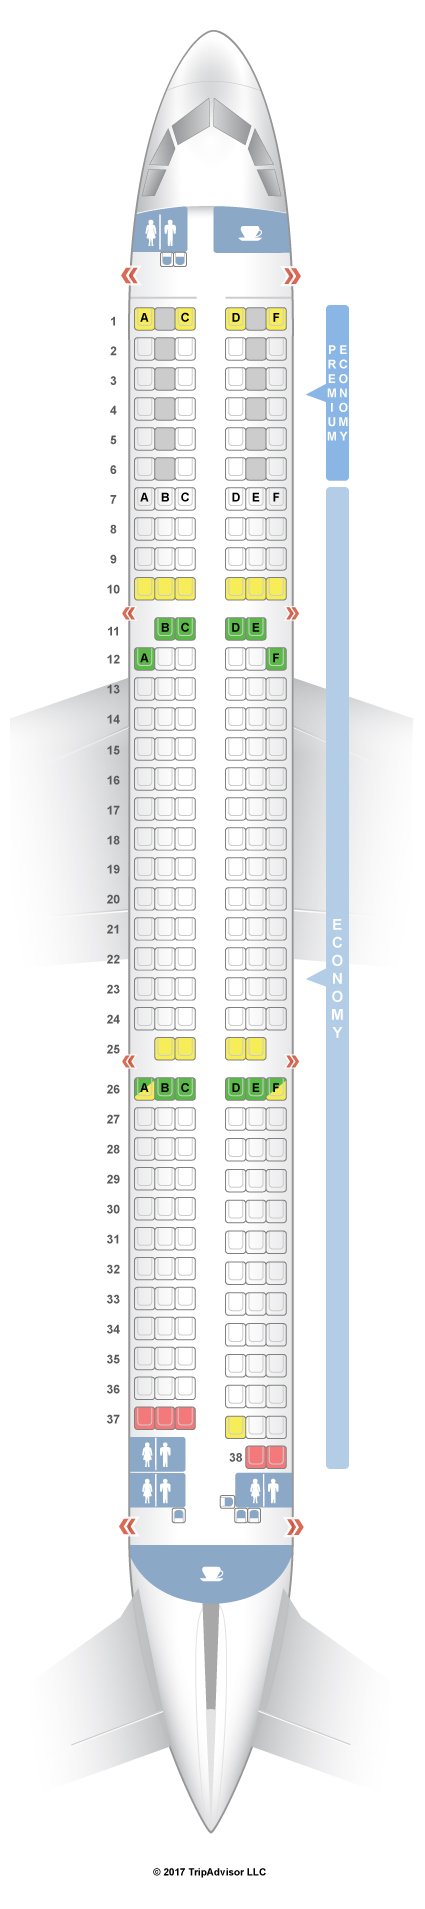 Air Canada Airbus A321 200 Seating Chart